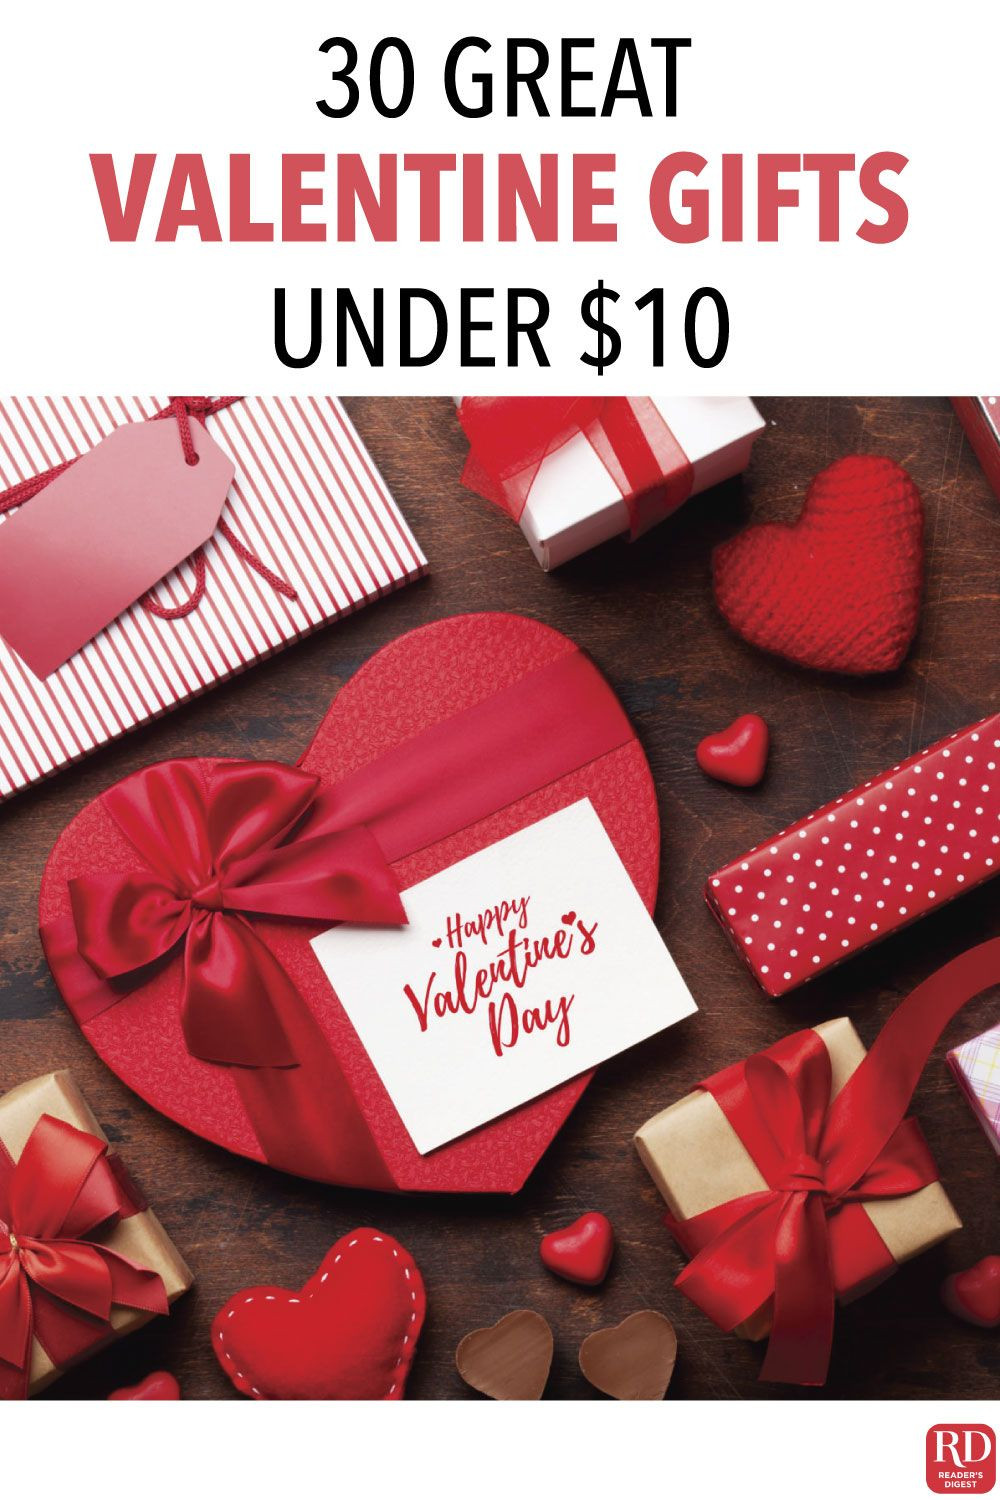 Valentine Gift Ideas Under $10
 30 Great Valentine Gifts Under $10